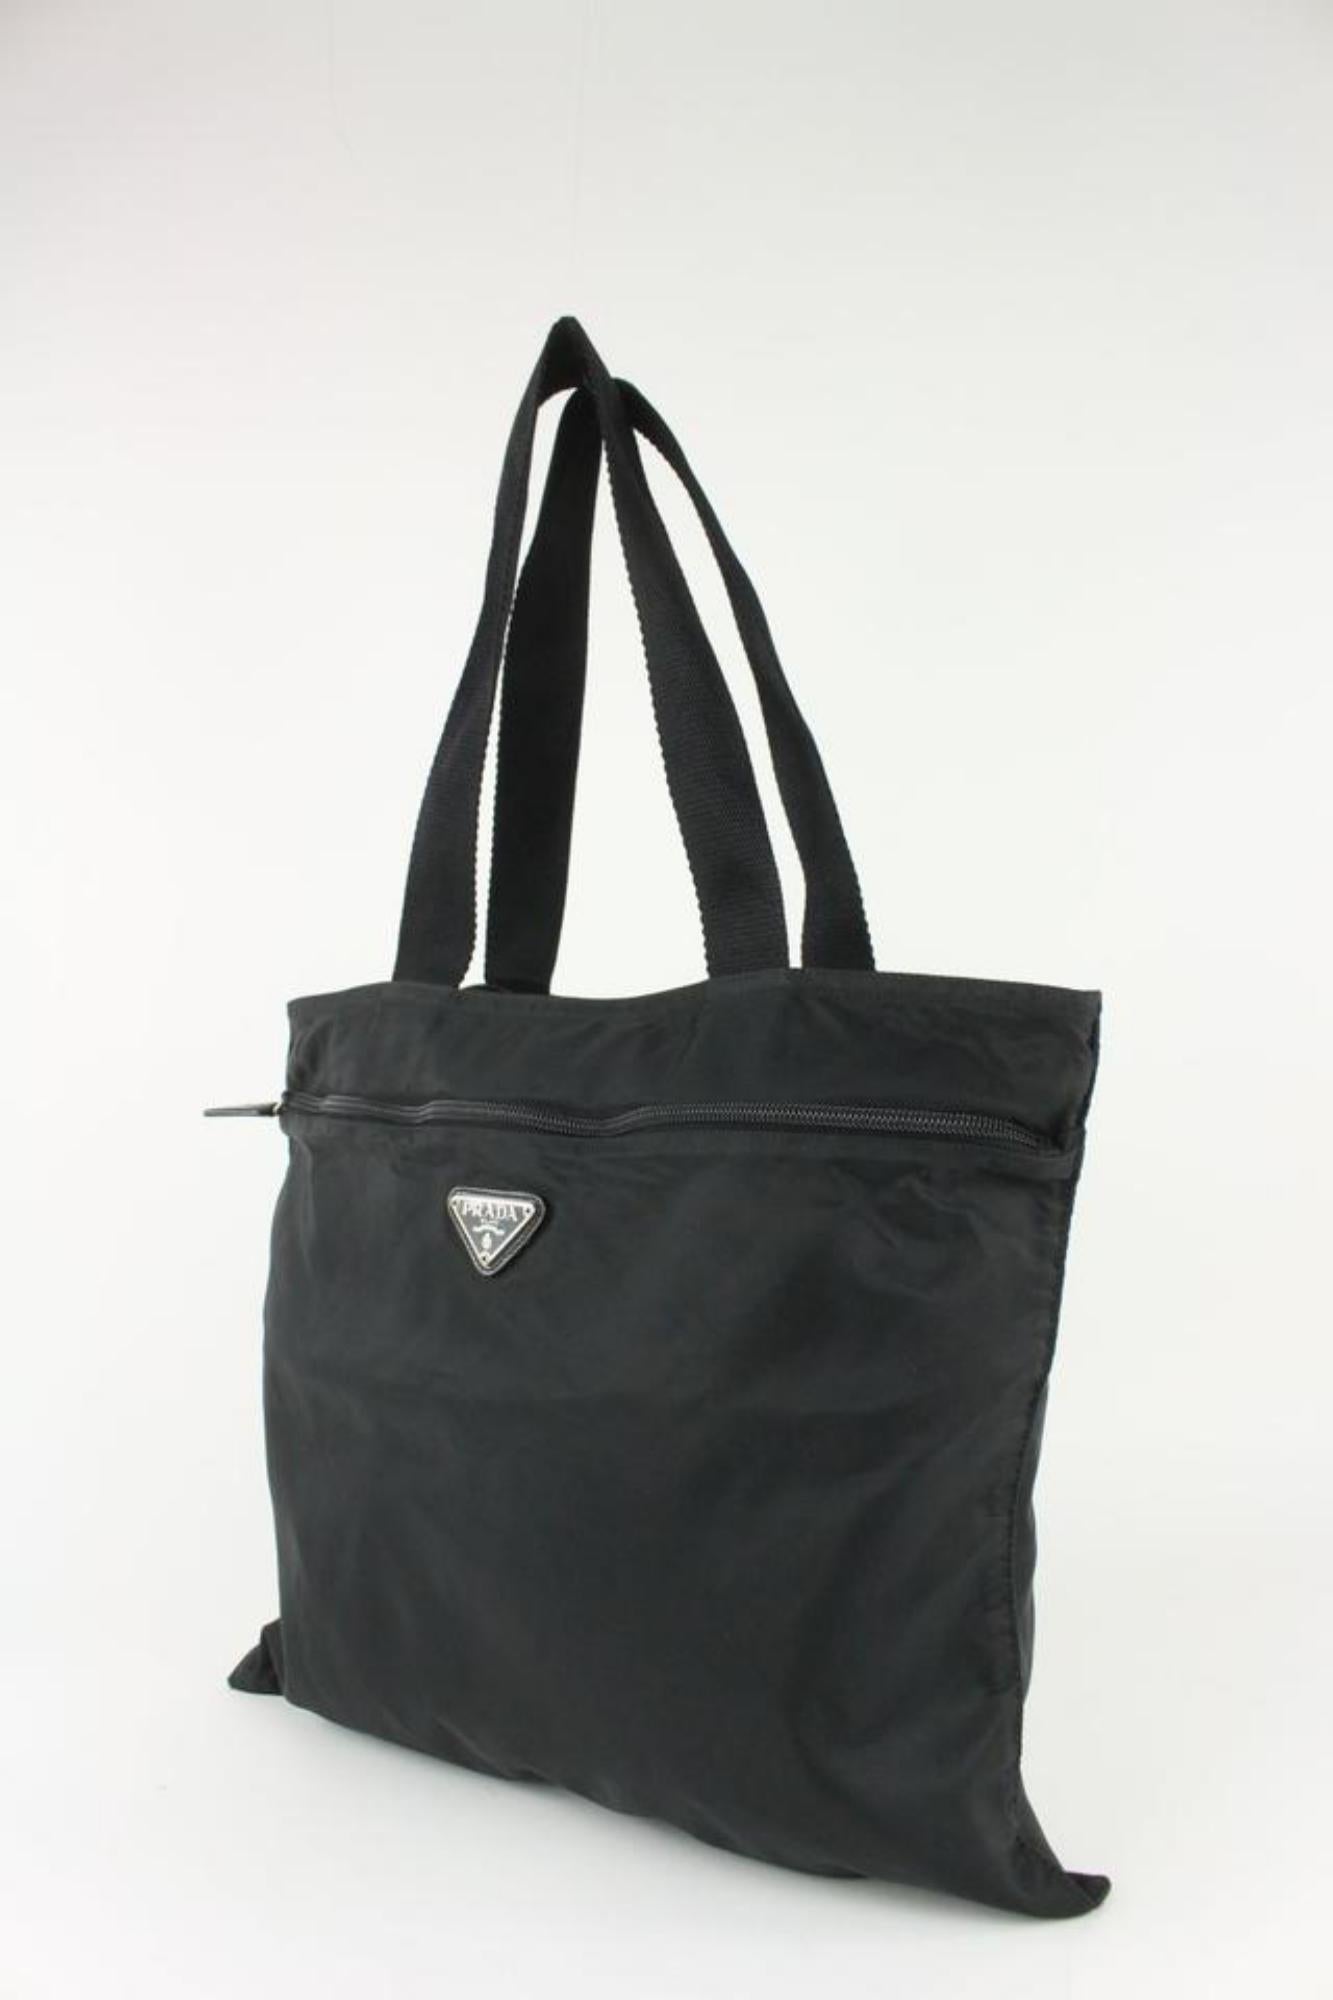 Prada Black Nylon Tessuto Shopper Tote Bag 3PR1021 6